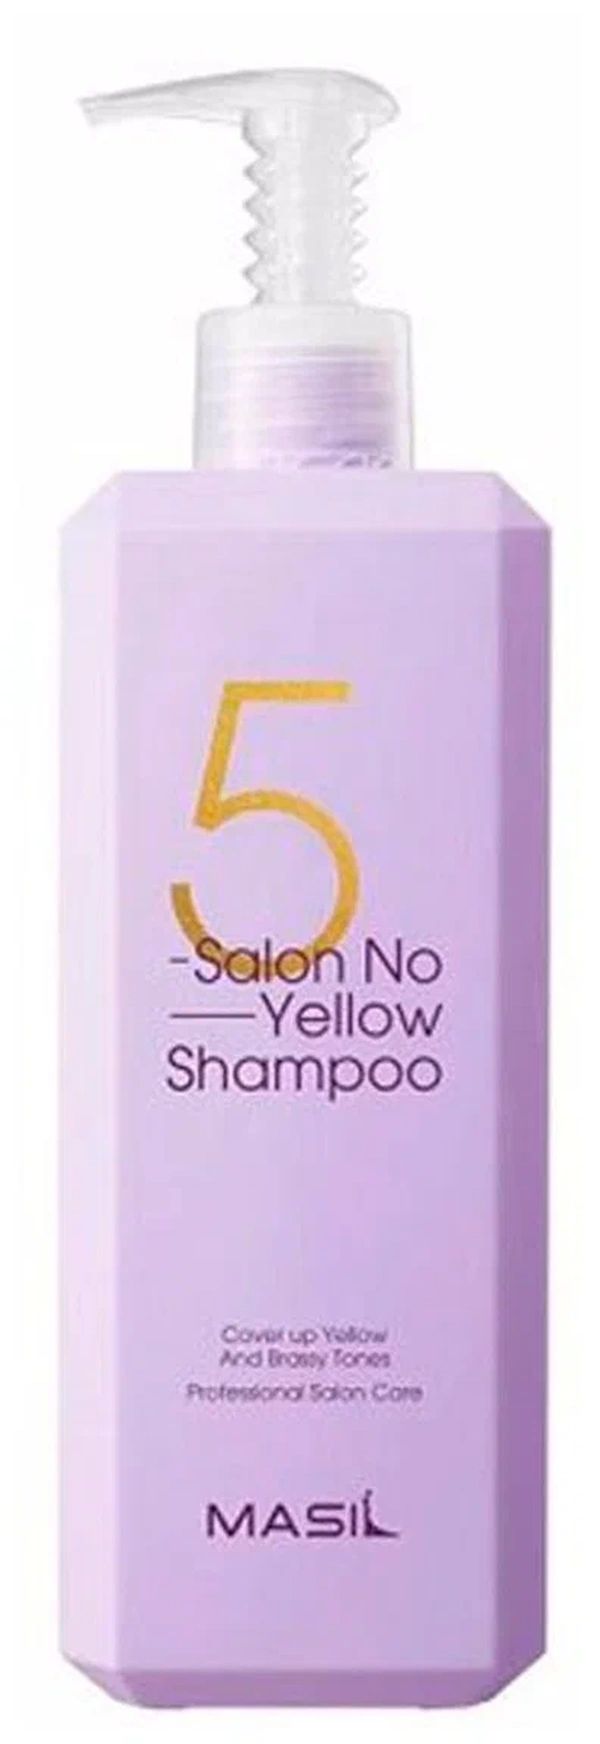 Тонирующий шампунь для осветленных волос MASIL 5 Salon No Yellow Shampoo 500 мл masil увлажняющее парфюмированное масло для волос с лактобактериями 66